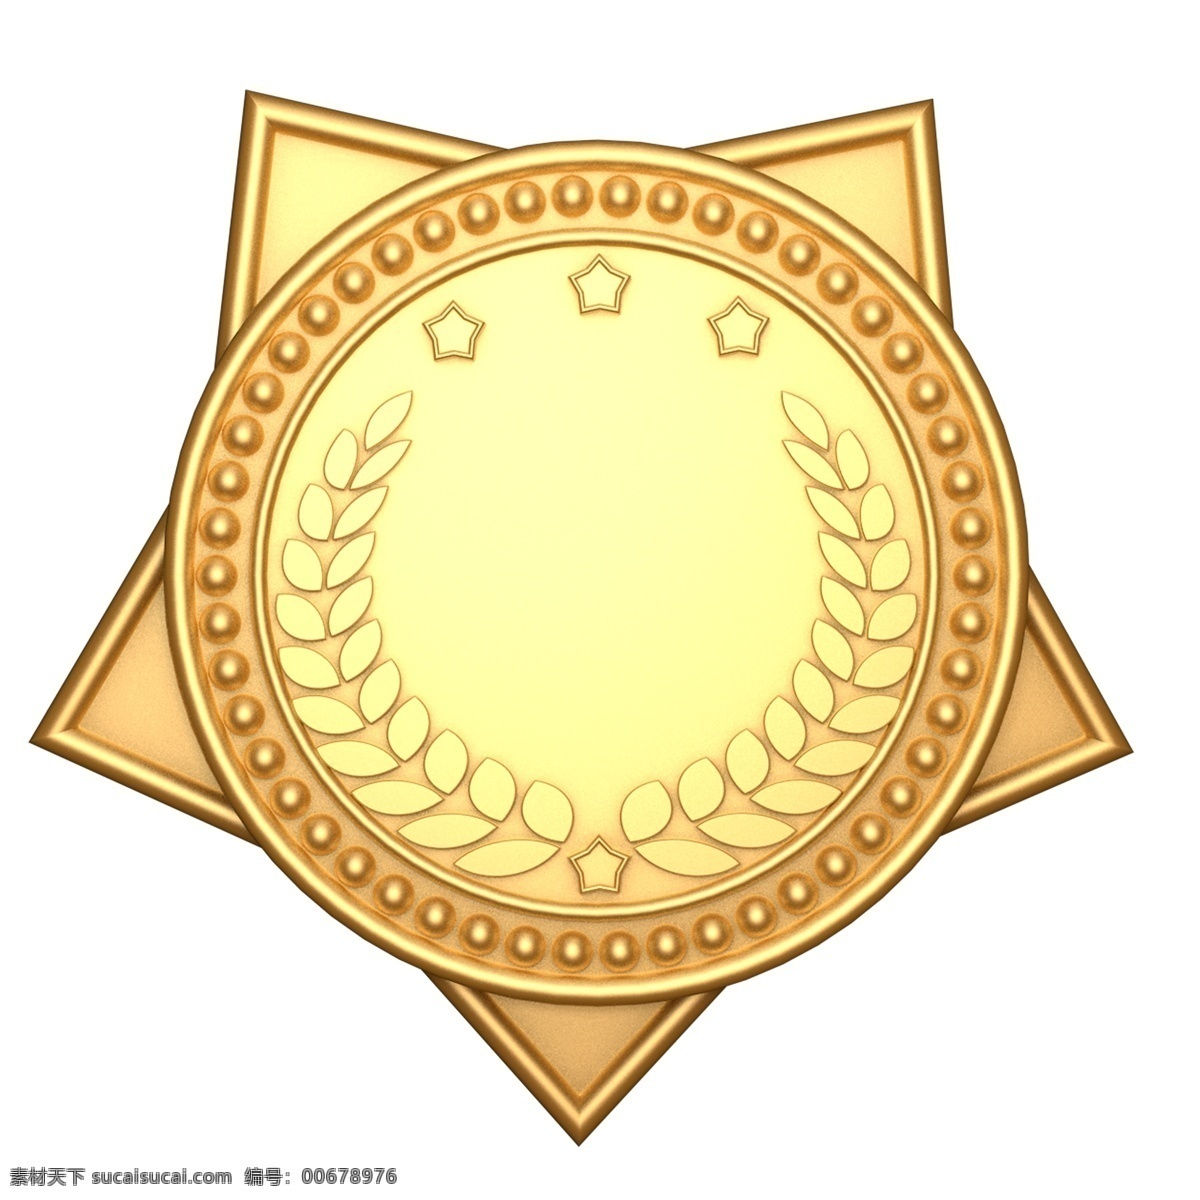 一枚奖章 金色 奖章 太阳形奖章 表彰 金色的奖章